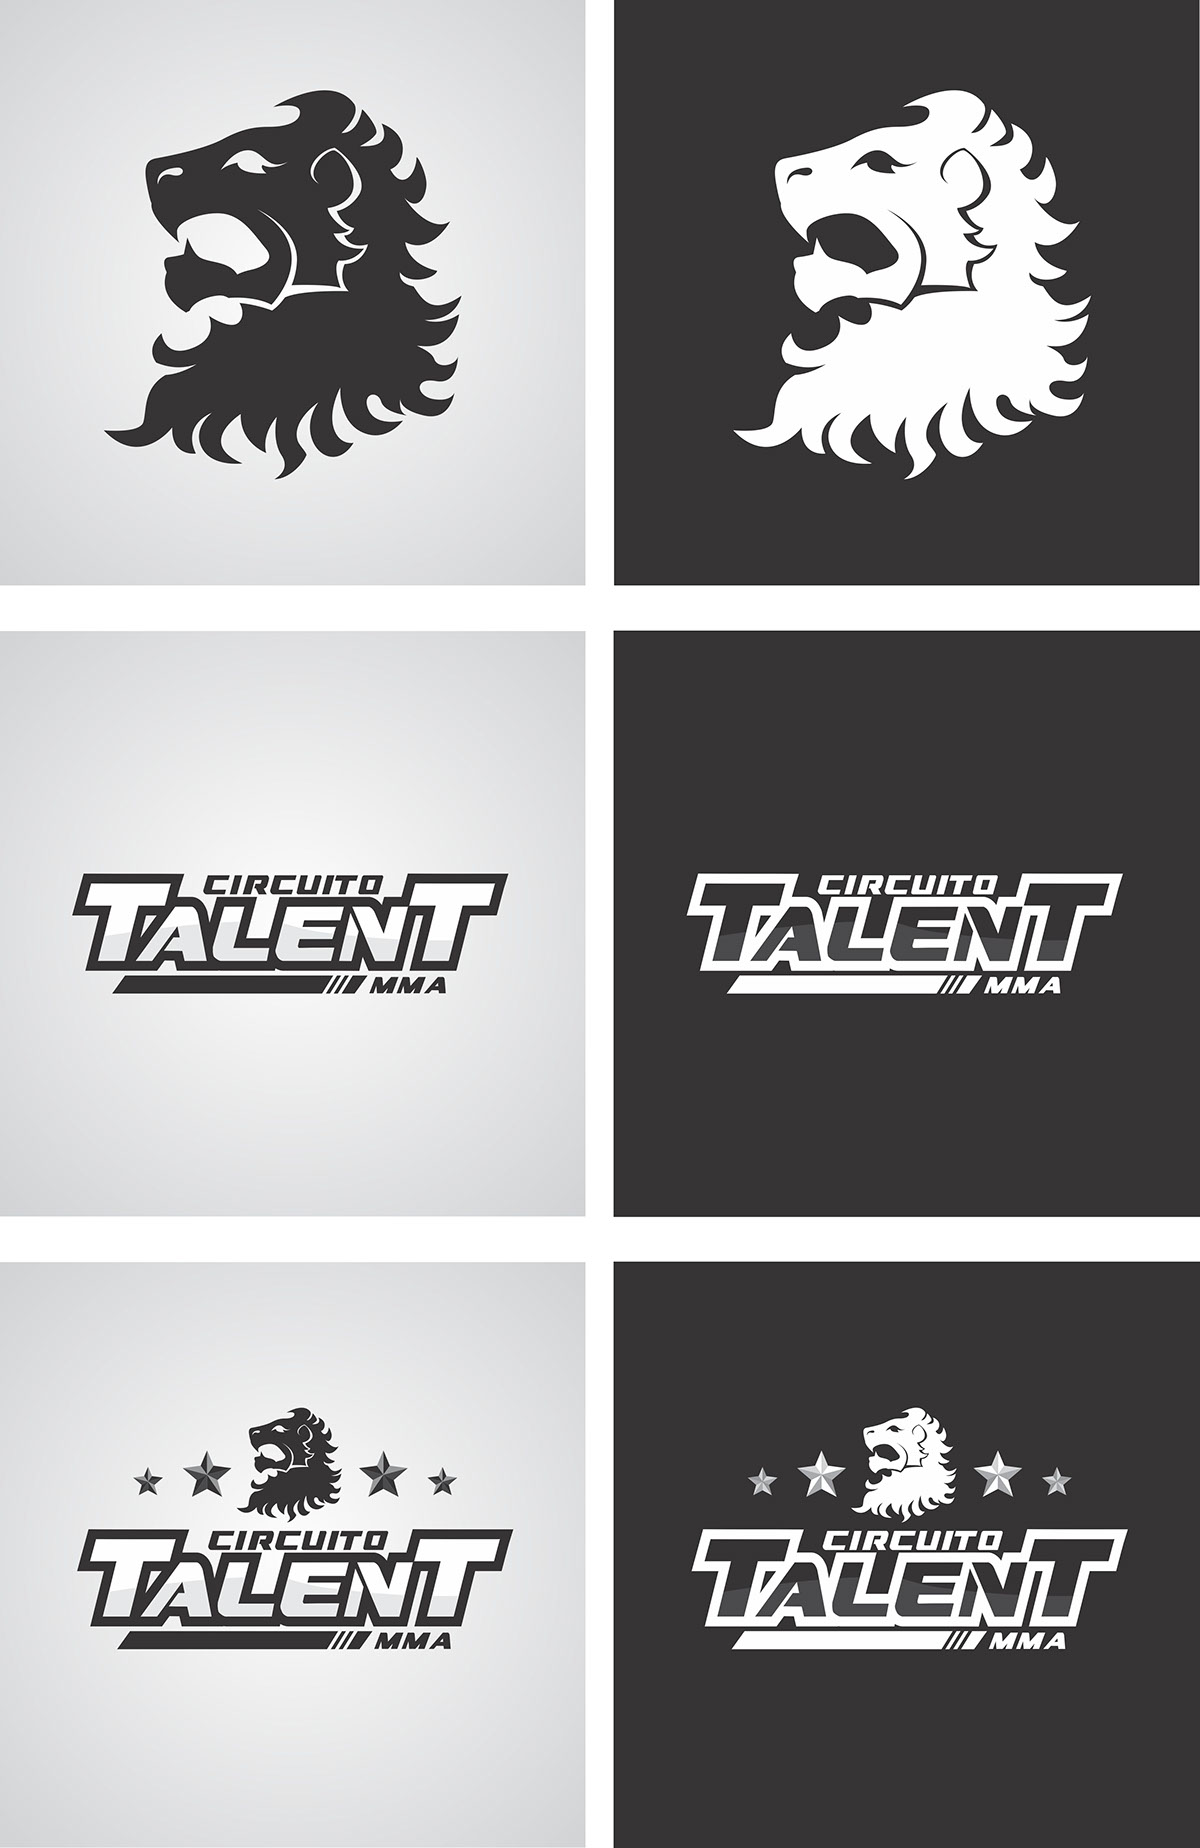 renault MMA Circuito Talent fight logo